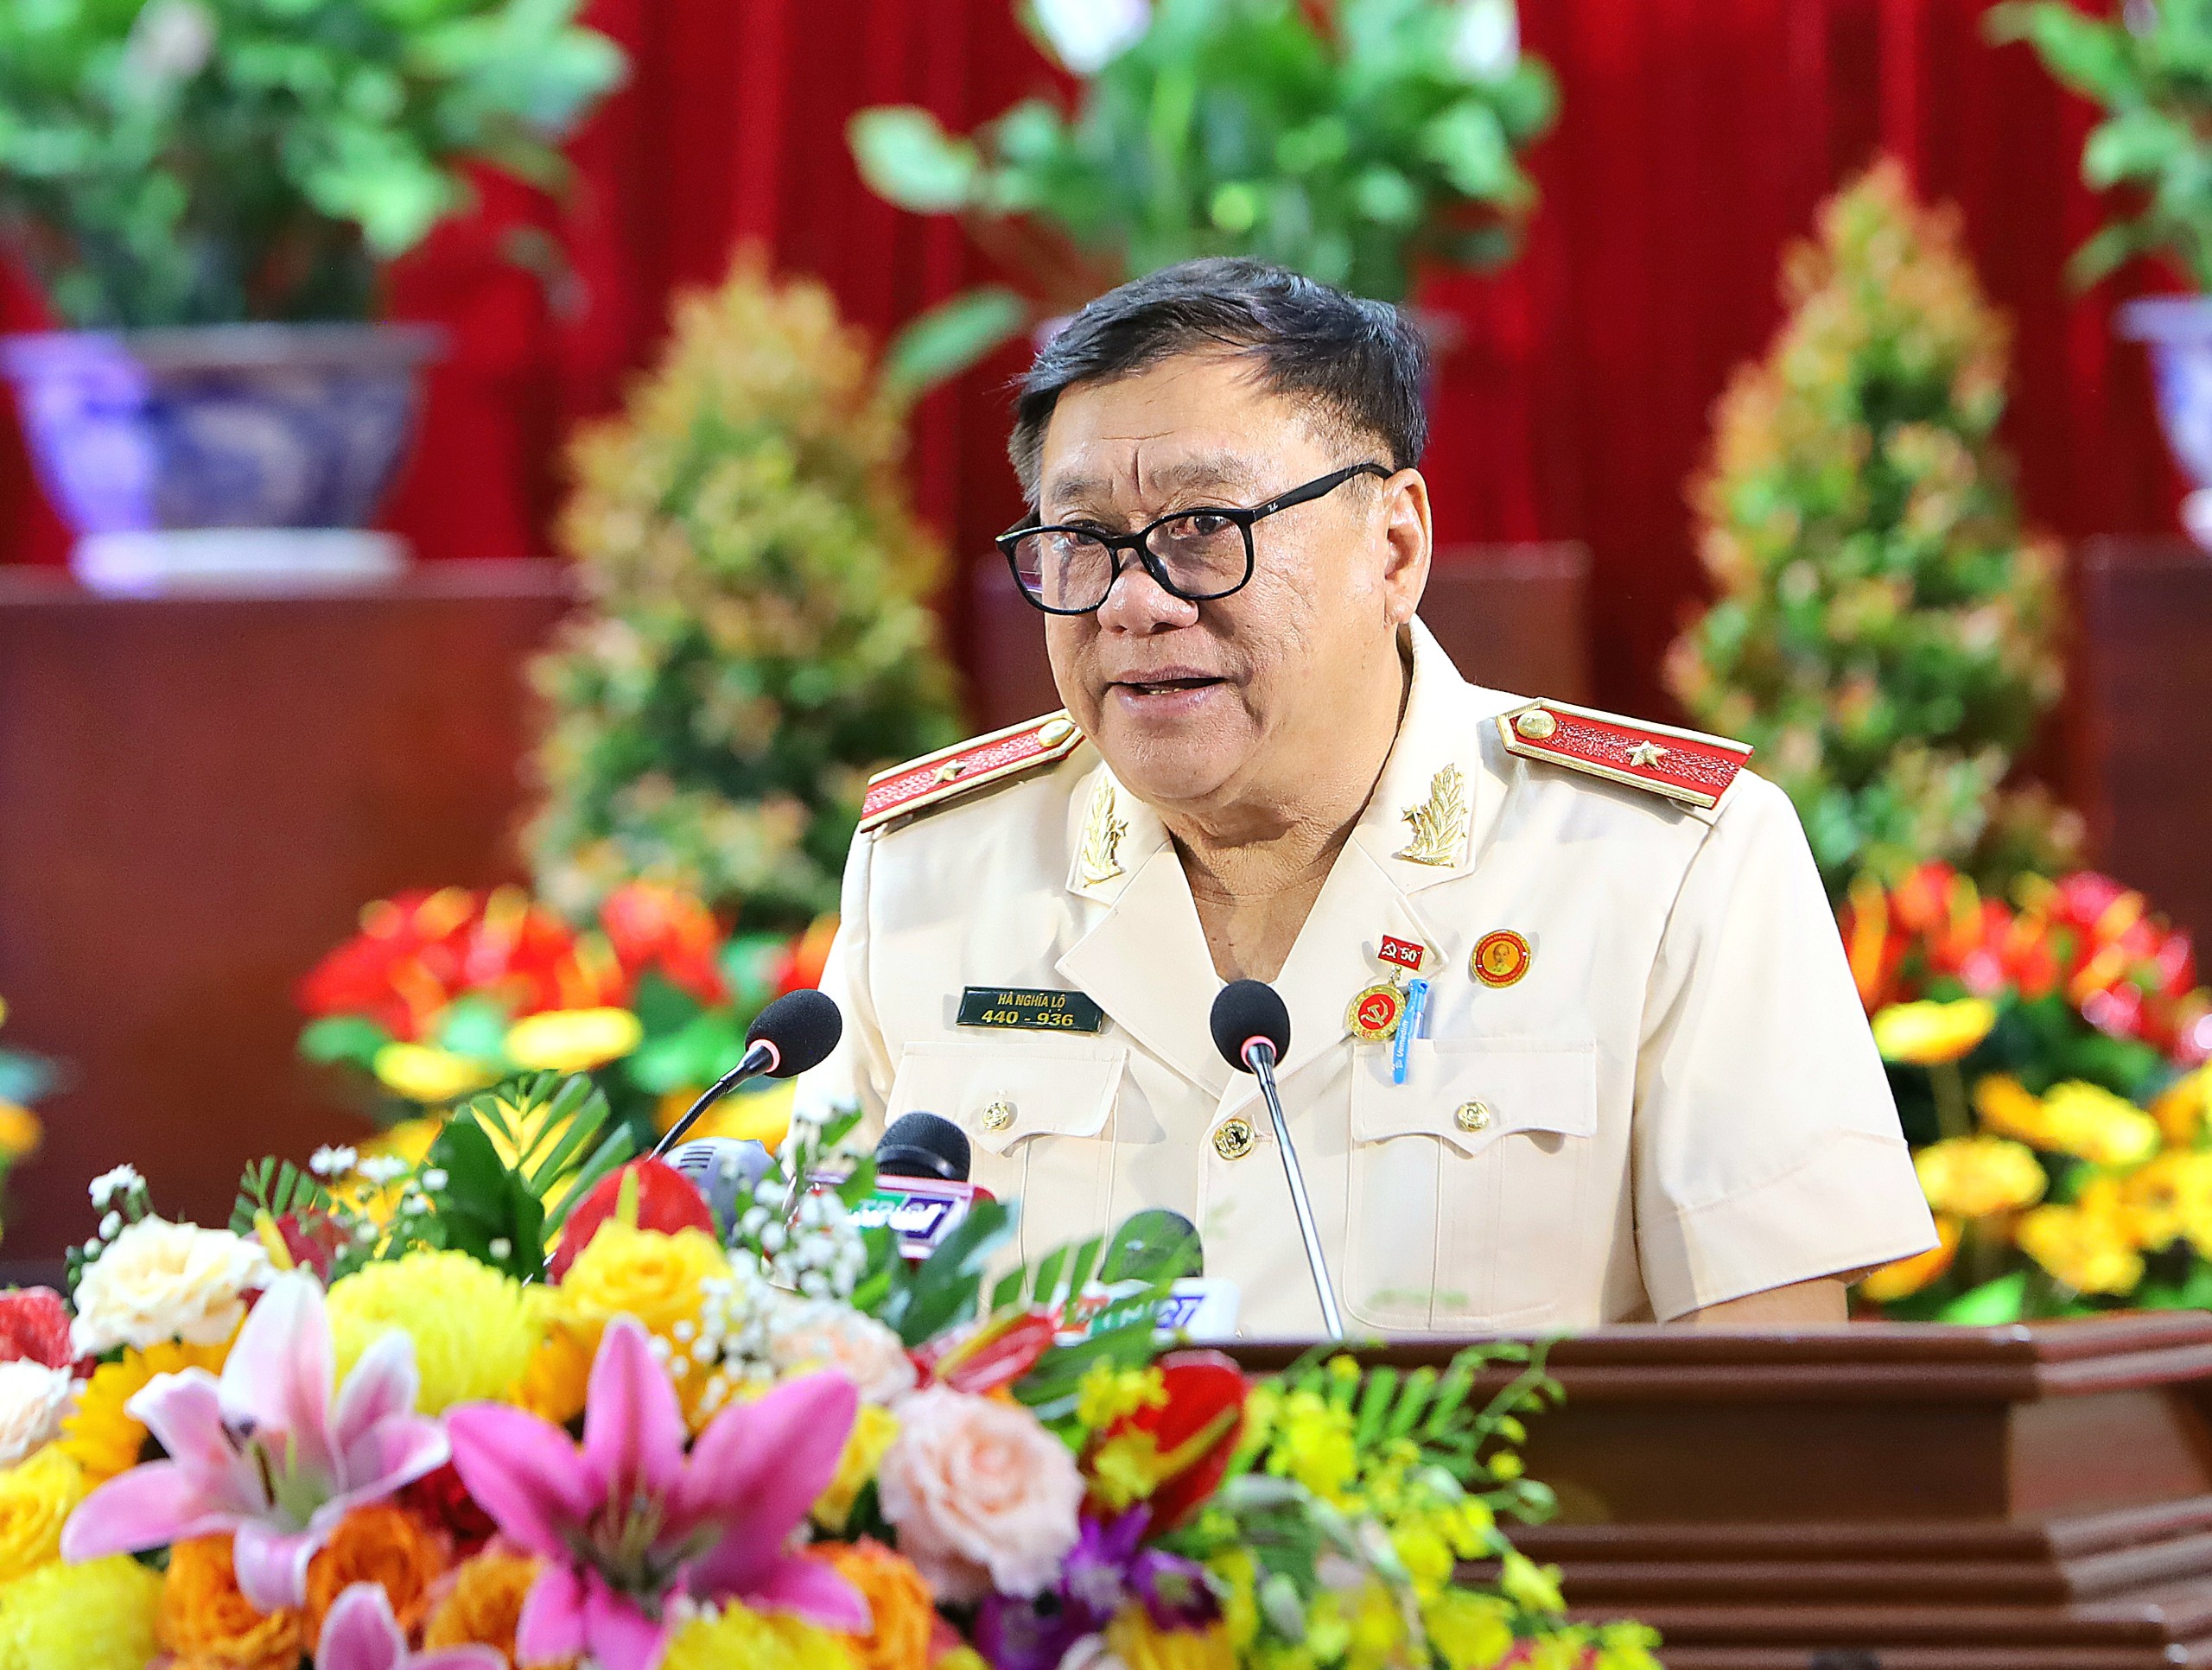 Thiếu tướng Hà Nghĩa Lộ - Nguyên Giám đốc Công an TP. Cần Thơ thay mặt các Đảng viên cao niên tuổi Đảng nhận huy hiệu phát biểu cảm tưởng.